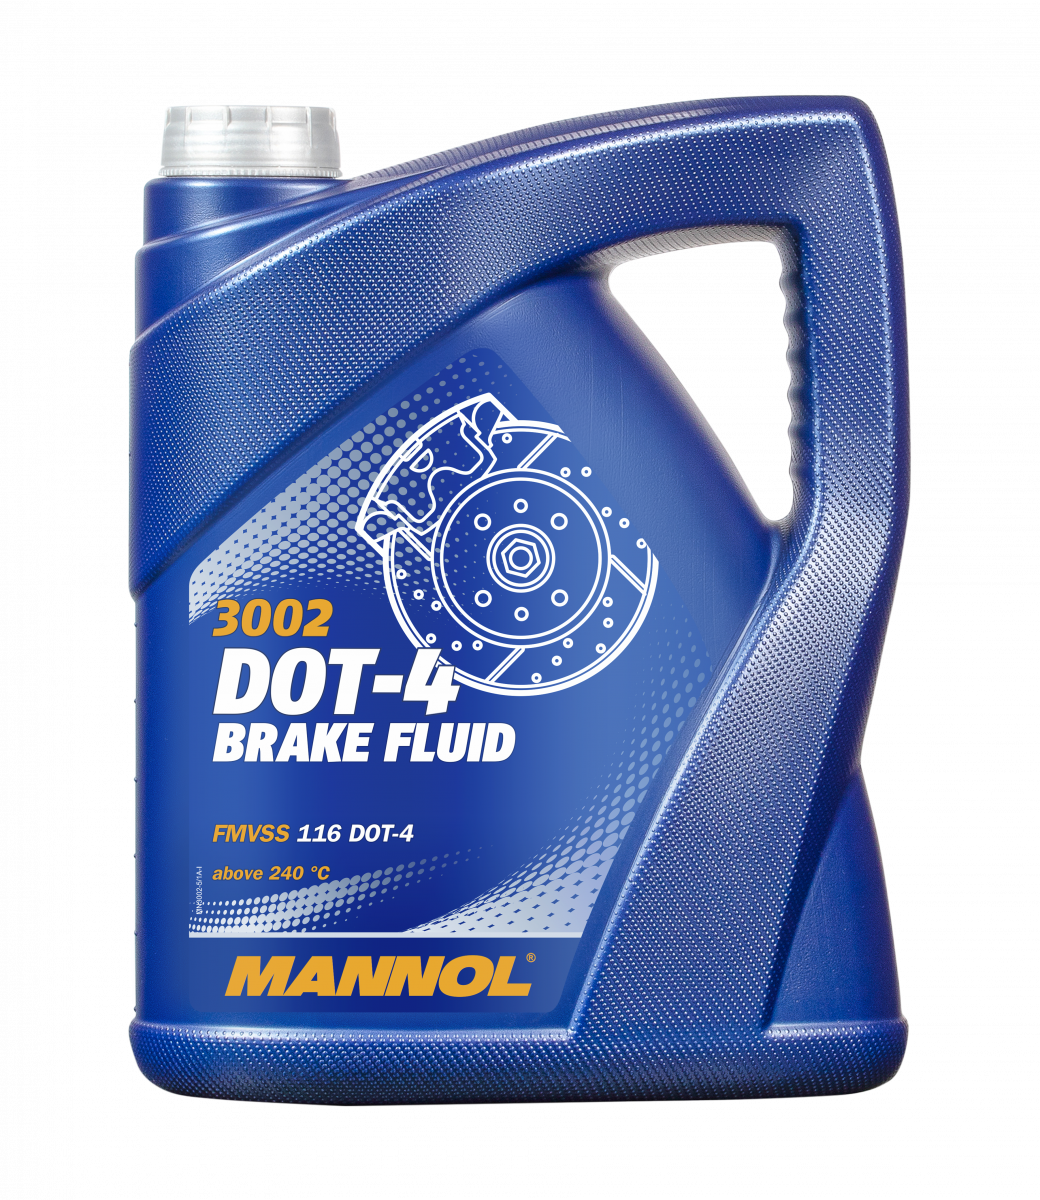 Mannol 3002 Bremsflüssigkeit  DOT-4 Brake Fluid 5 Liter